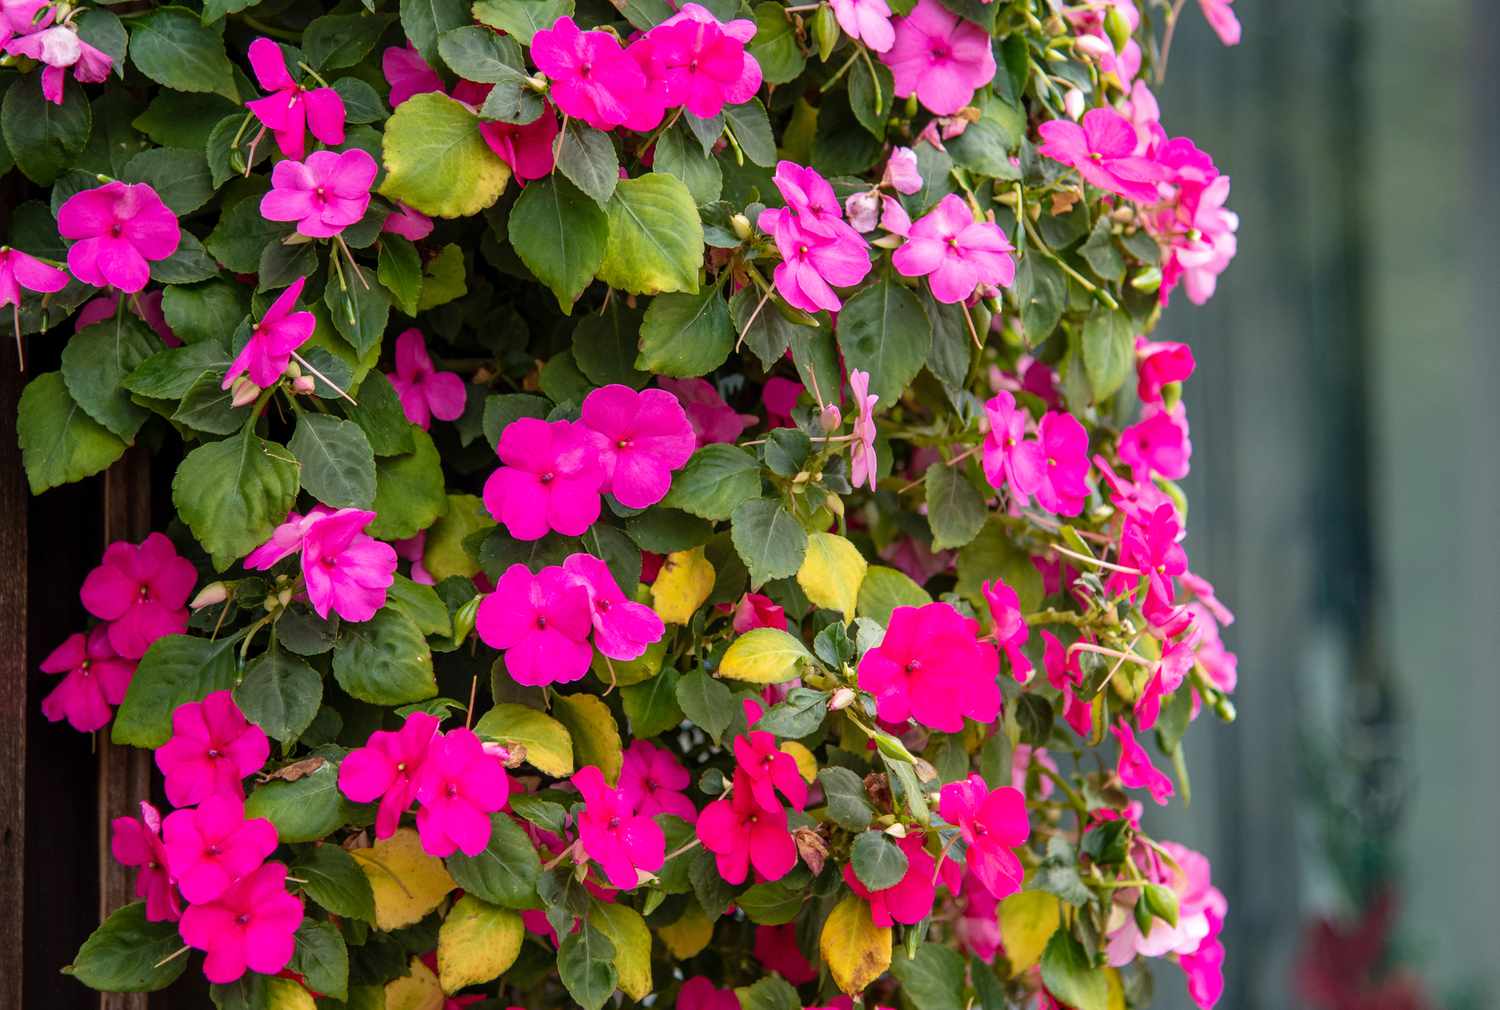 Impatiens plante grimpante à l'ombre avec des fleurs rose vif